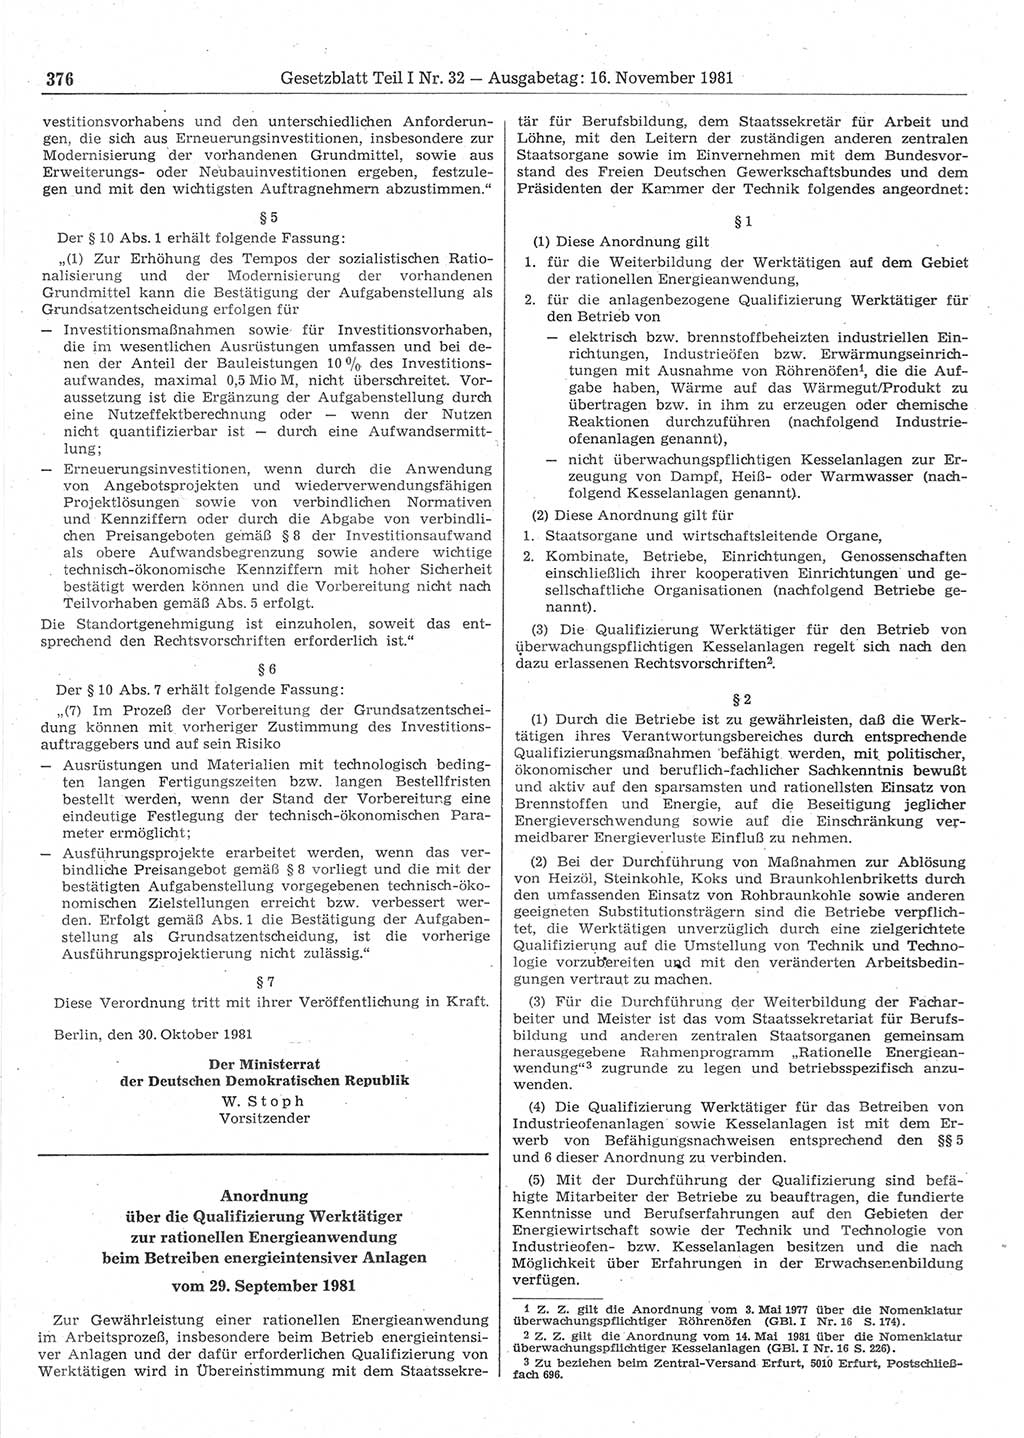 Gesetzblatt (GBl.) der Deutschen Demokratischen Republik (DDR) Teil Ⅰ 1981, Seite 376 (GBl. DDR Ⅰ 1981, S. 376)